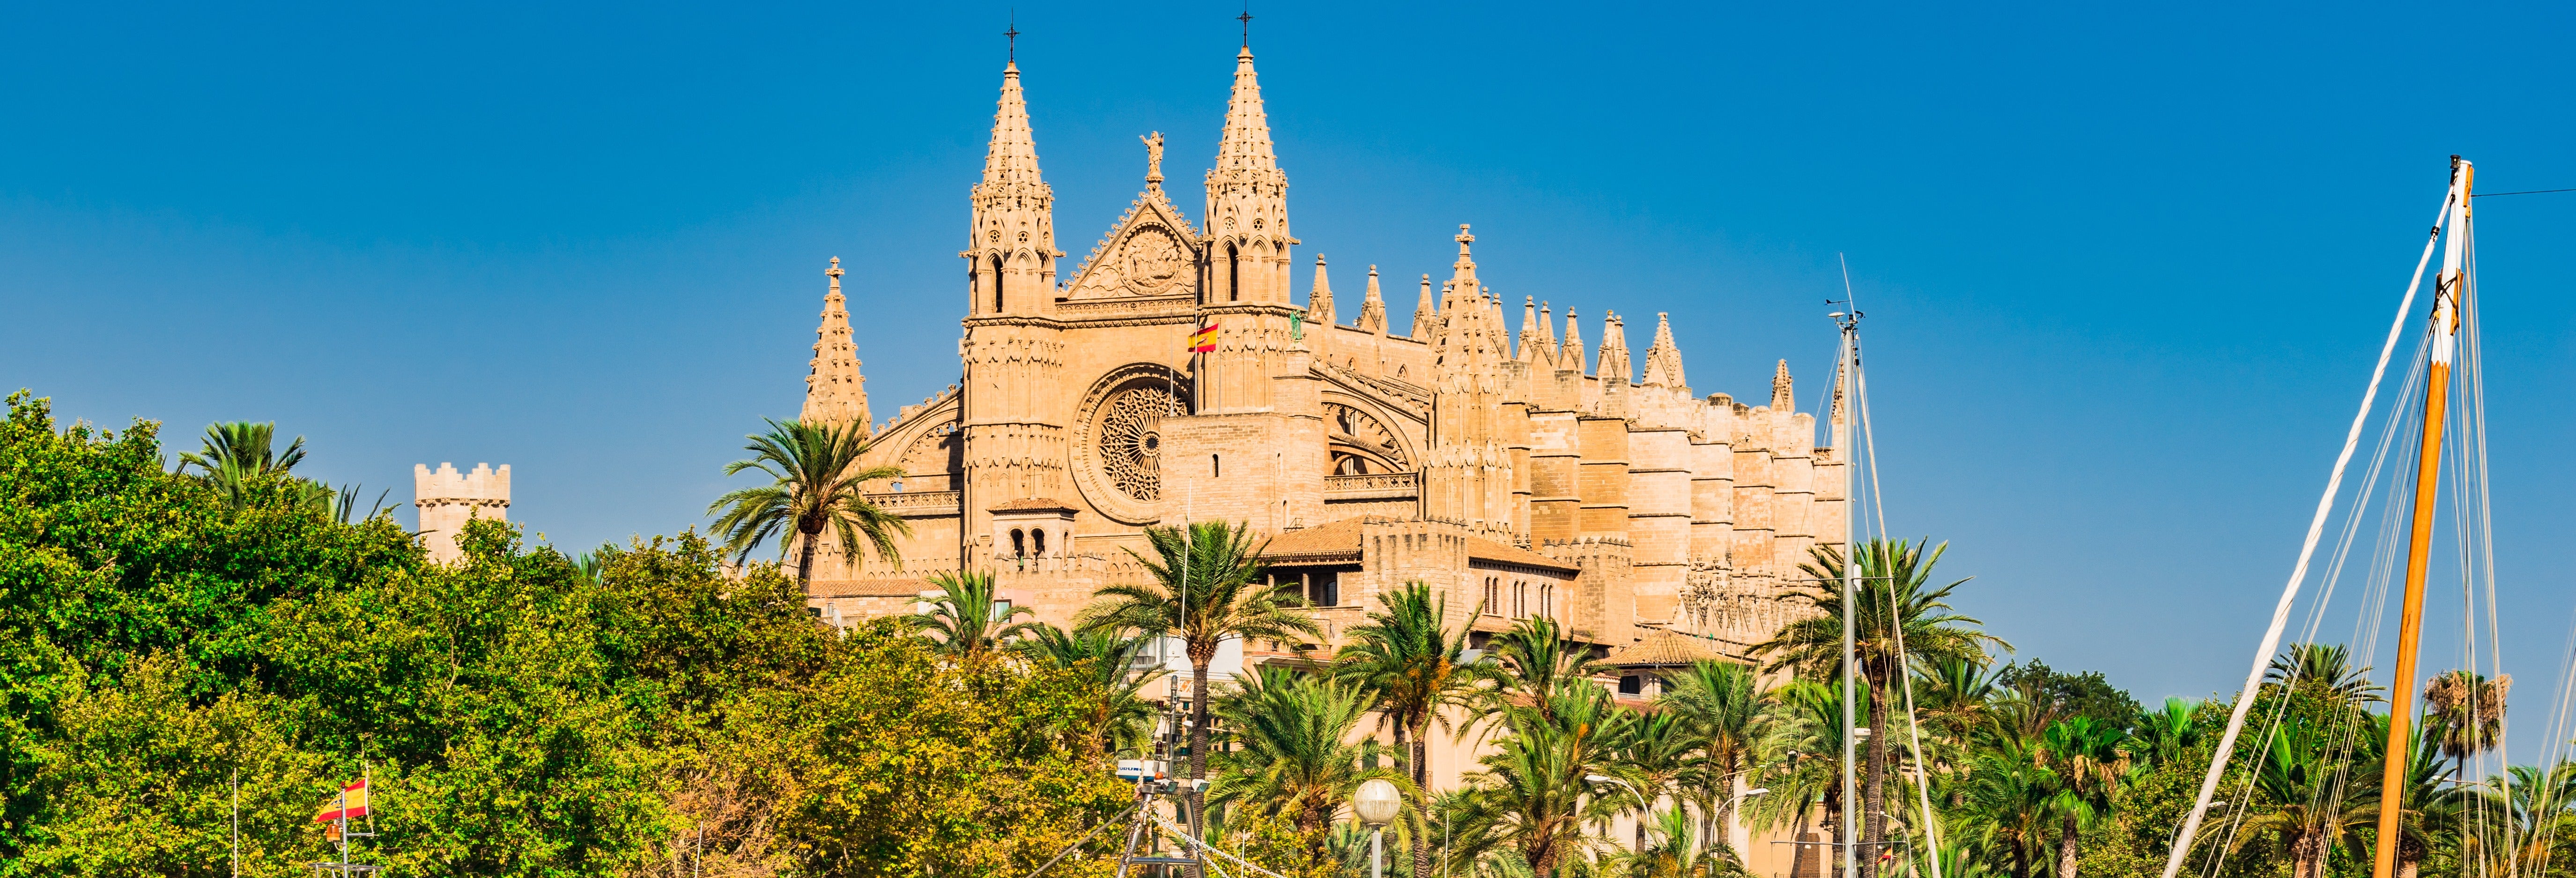 Tour por Palma e sua catedral + Valldemossa